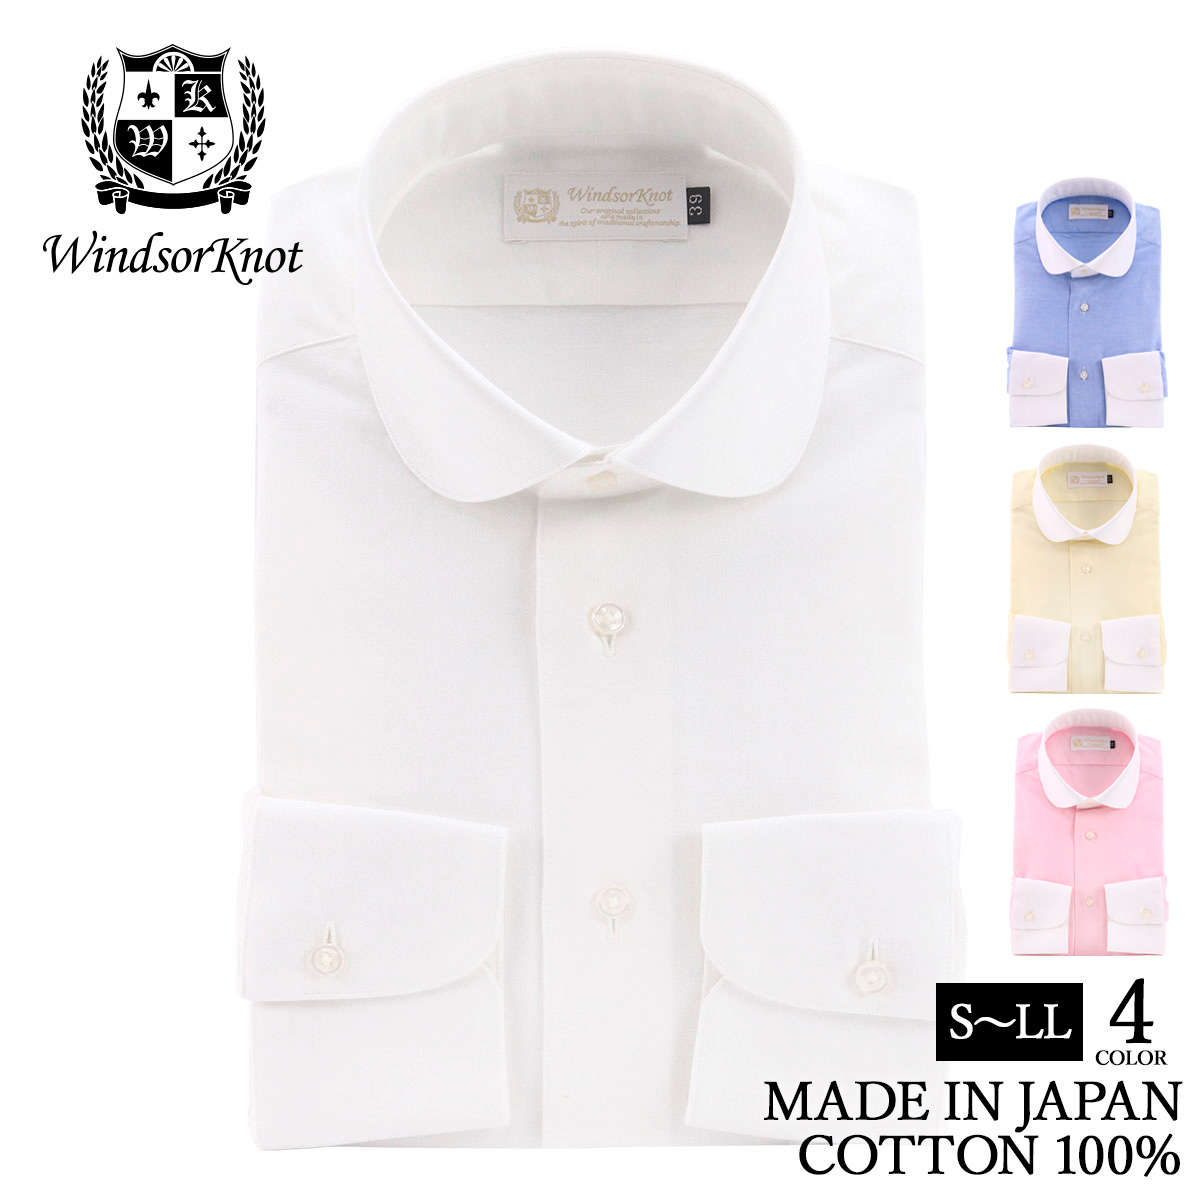 ワイシャツ クレリック ラウンドカラー オックス イエロー 長袖 ドレスシャツ 日本製 綿100% プレッピー | 父の日 結婚式 ブランド おしゃれ プレゼント メンズ ギフト 高級 かっこいい